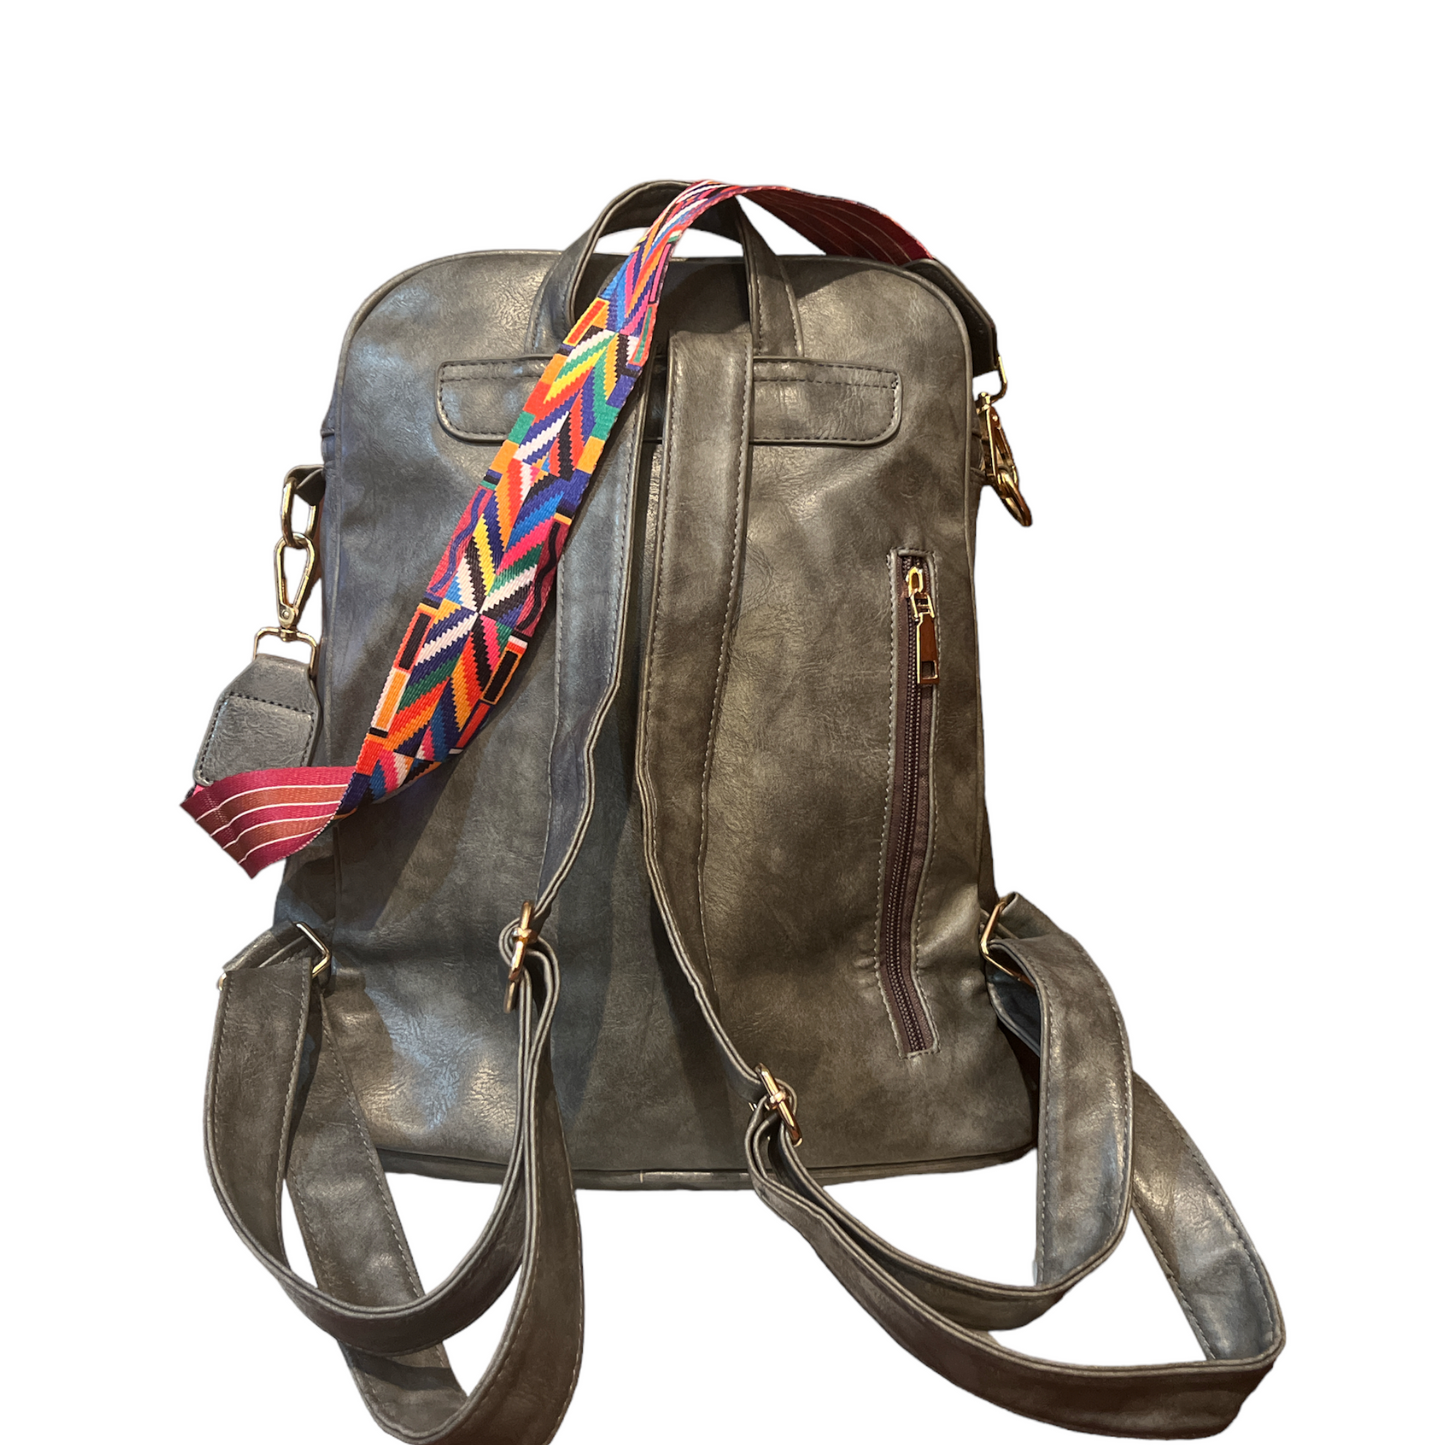 The Chloe Backpack